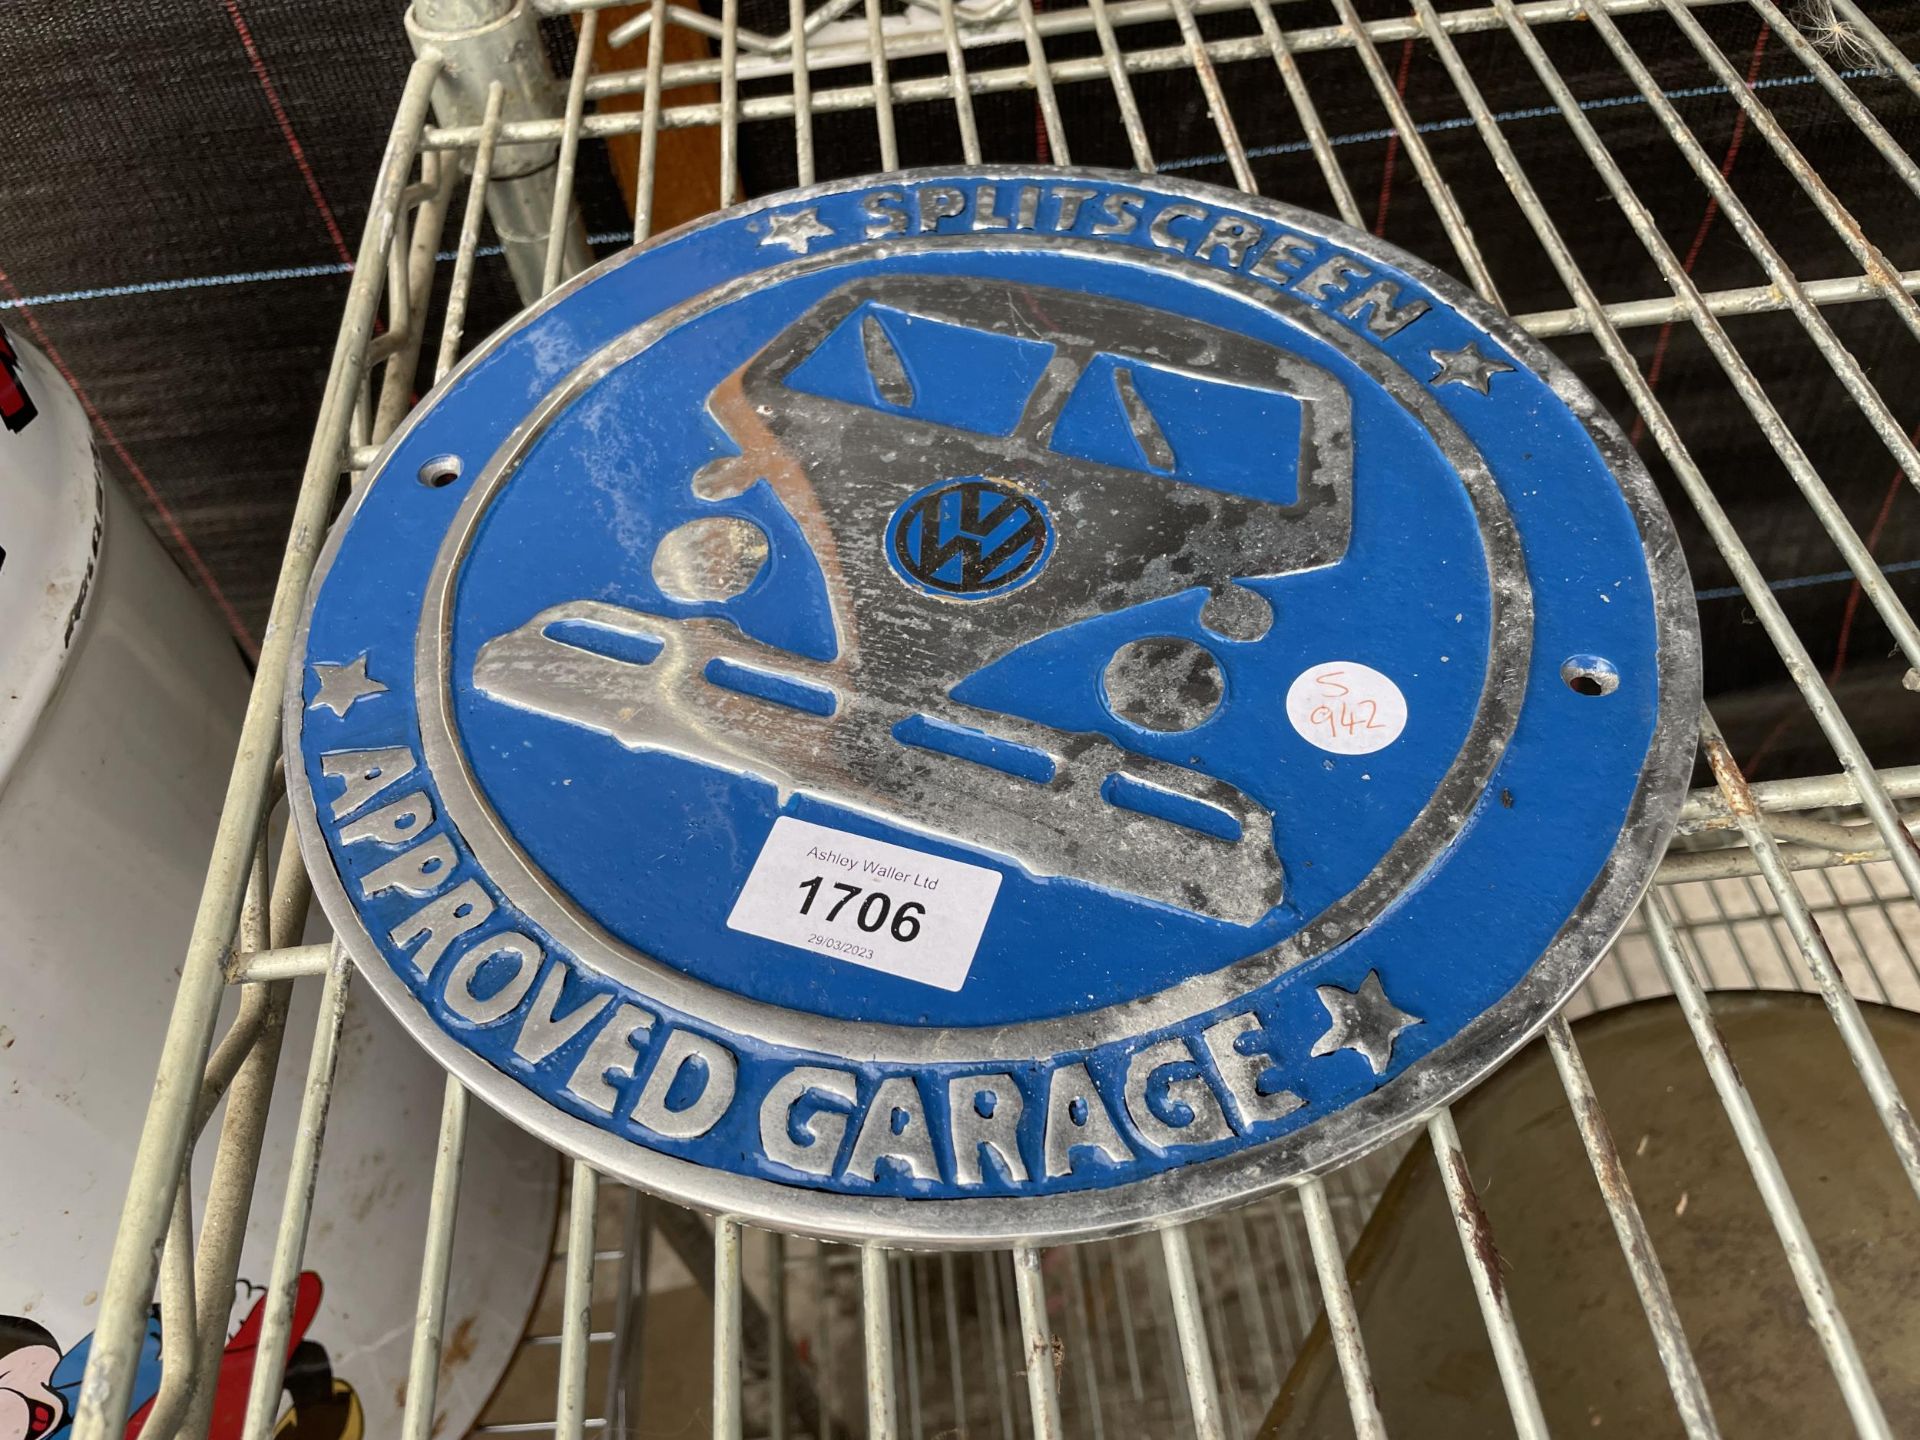 A BLUE VW CAST SIGN